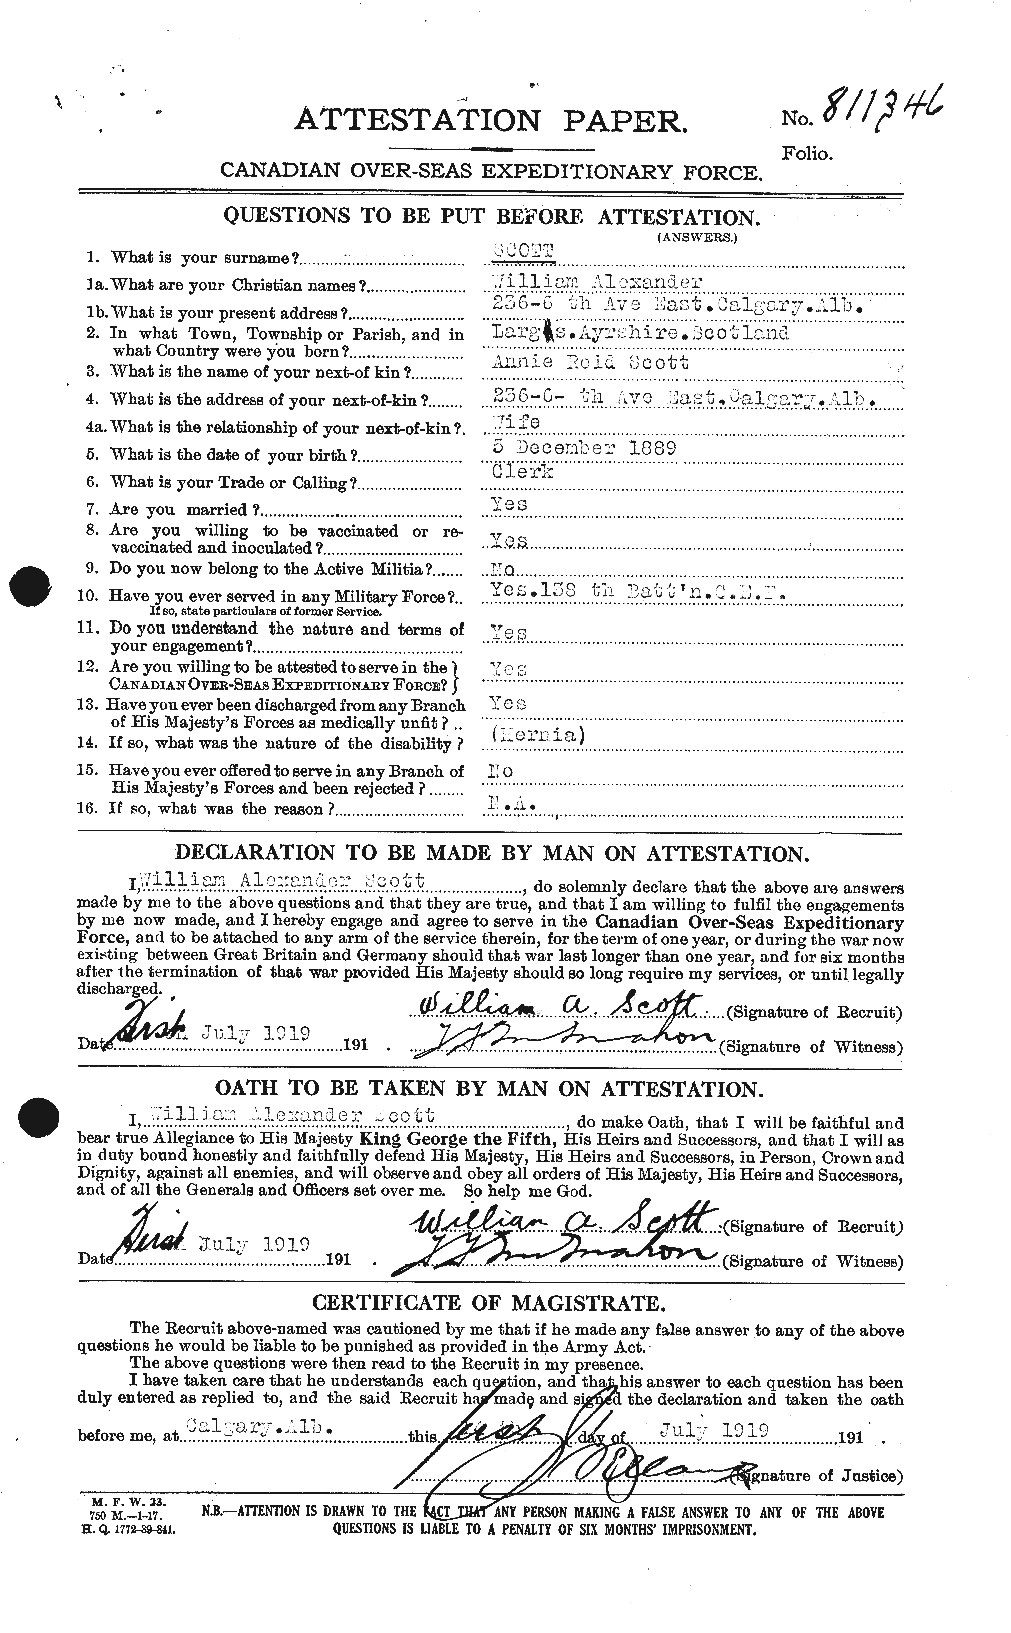 Dossiers du Personnel de la Première Guerre mondiale - CEC 087338a